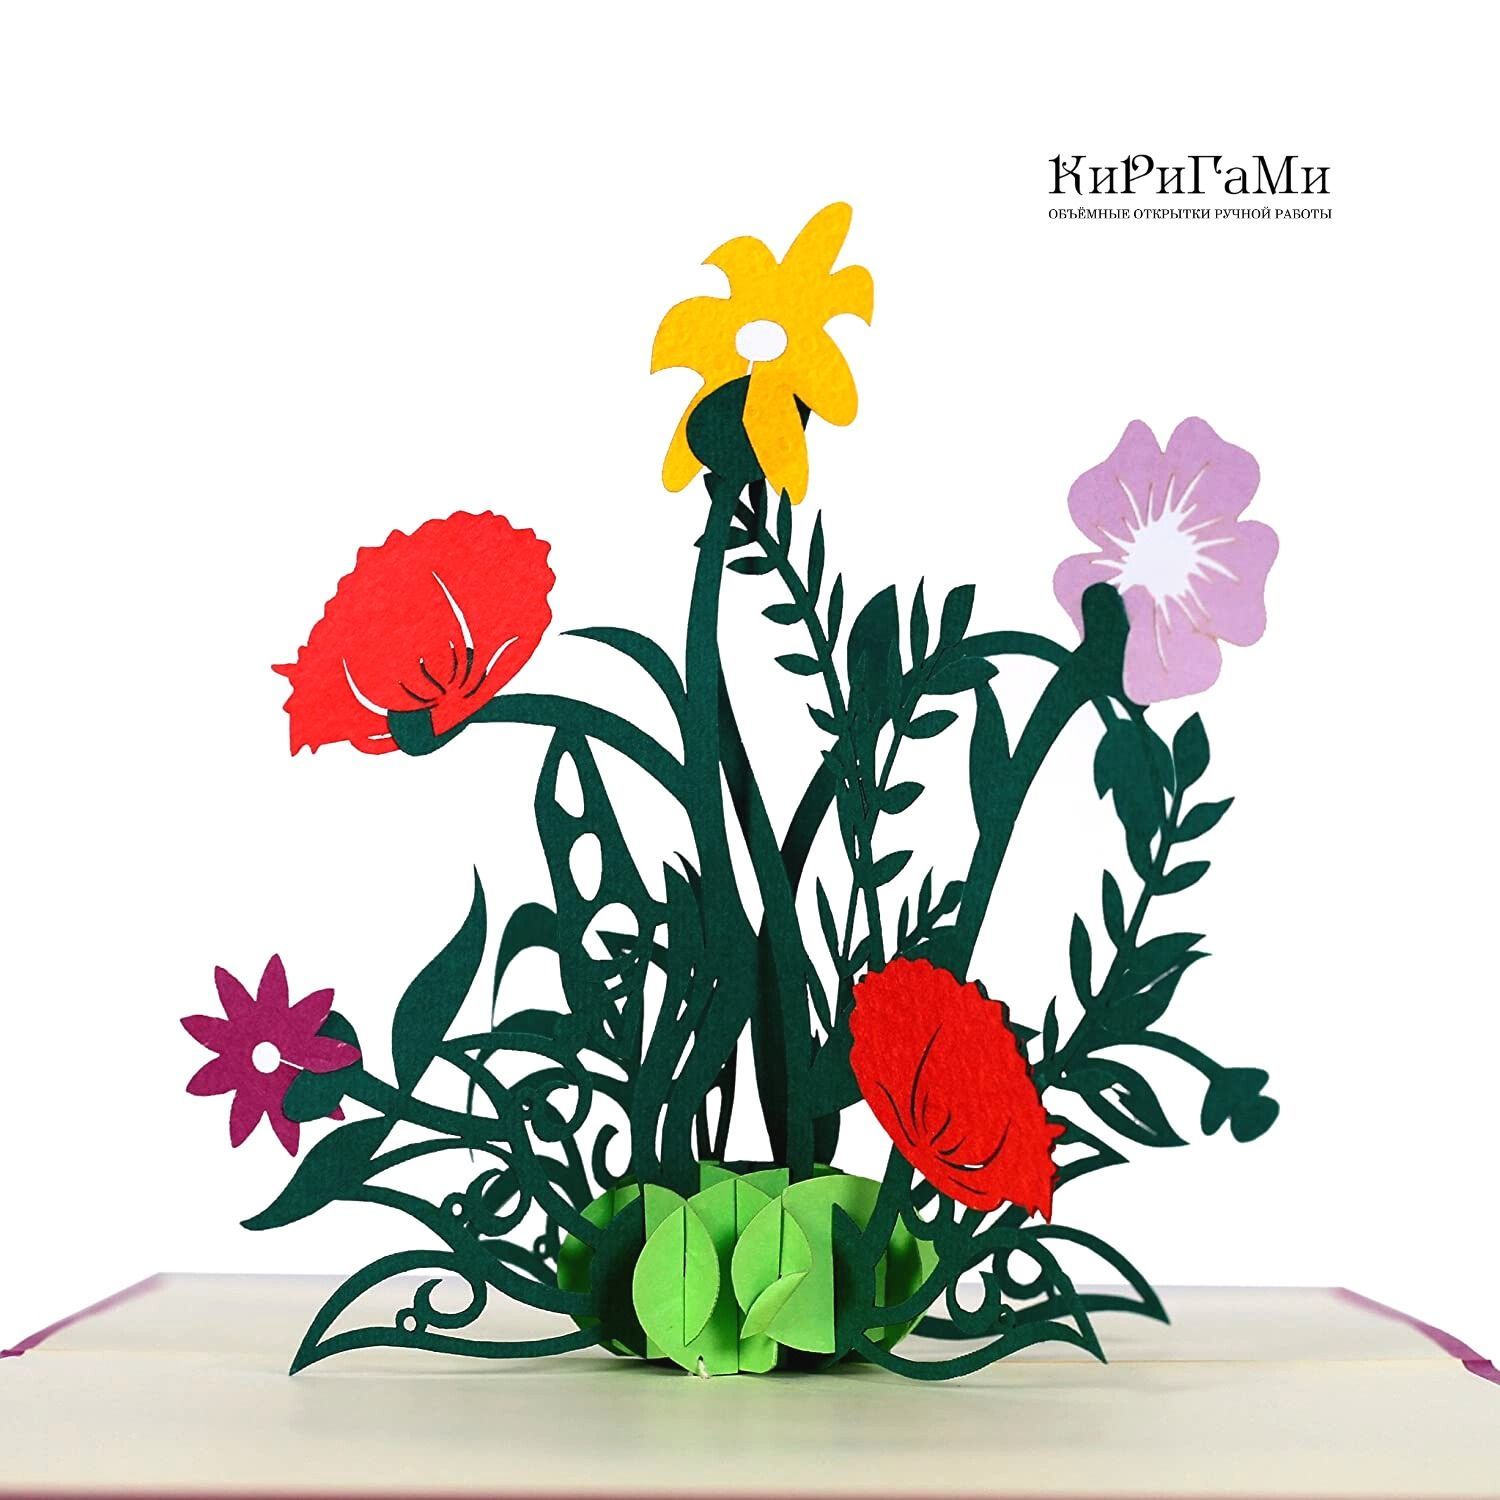 Как сделать 3d открытку с цветами - цветы из бумаги - Открытка на 8 марта.